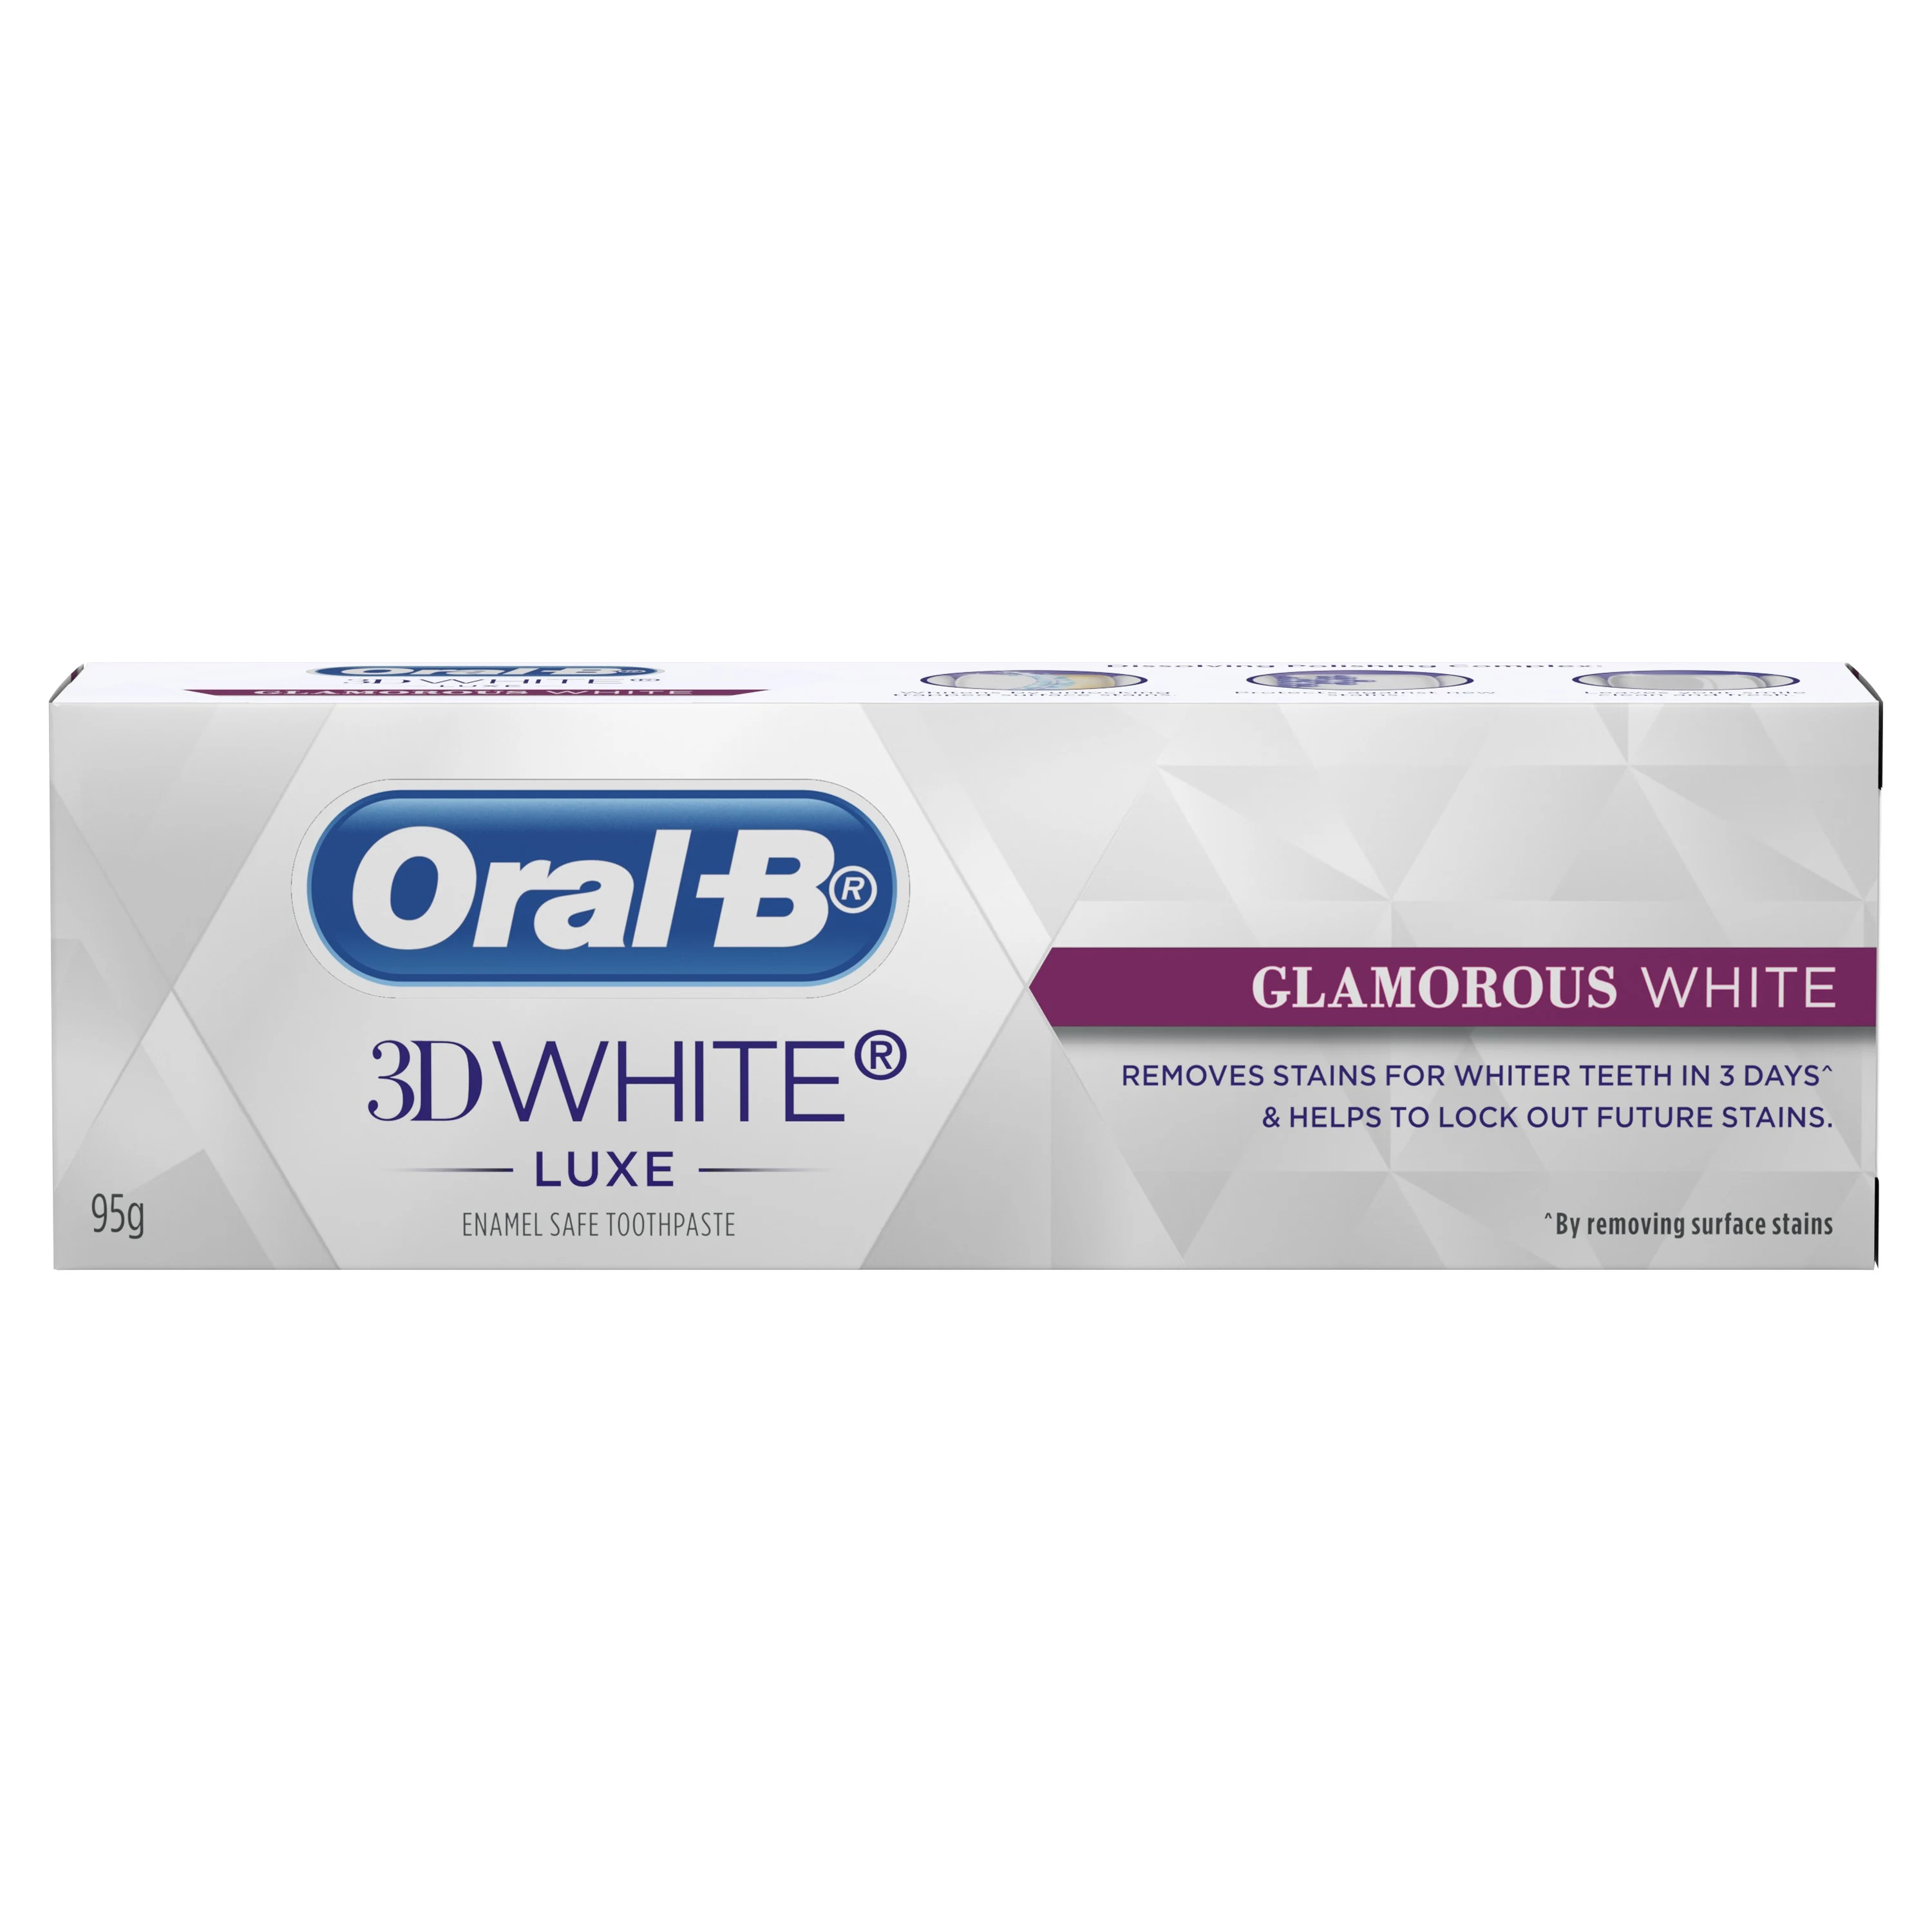 Oral-B 3D White Luxe Glamorous White Whitening Toothpaste 